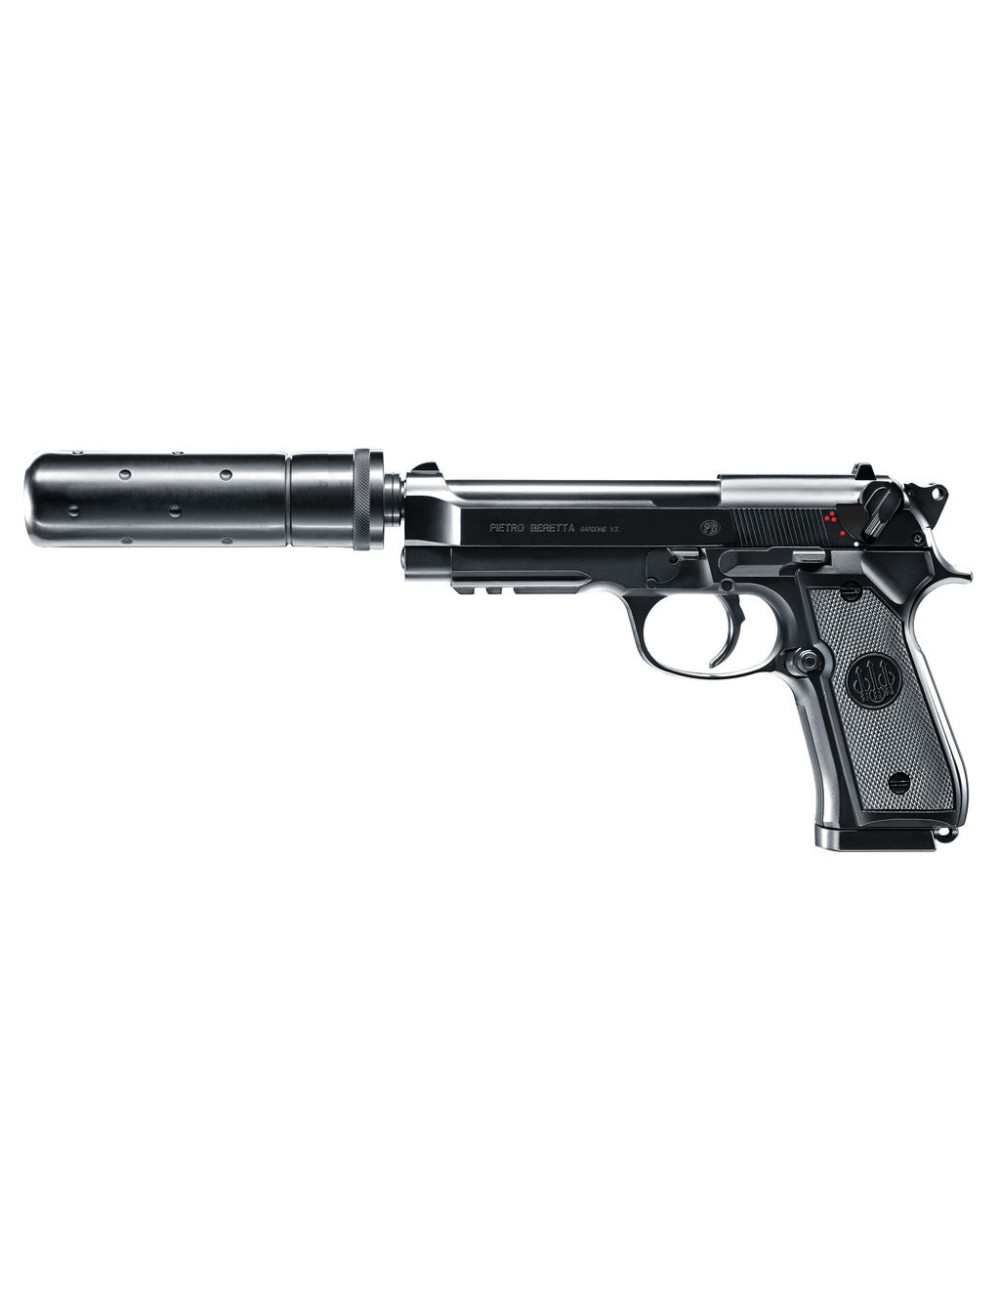 Outletdel ocio Pack Pistola Airsoft electrica Beretta M92FS. Calibre 6mm. +  Funda portabalines + Pilas + 1000 Bolas. 23054/21993/50996 : :  Deportes y aire libre